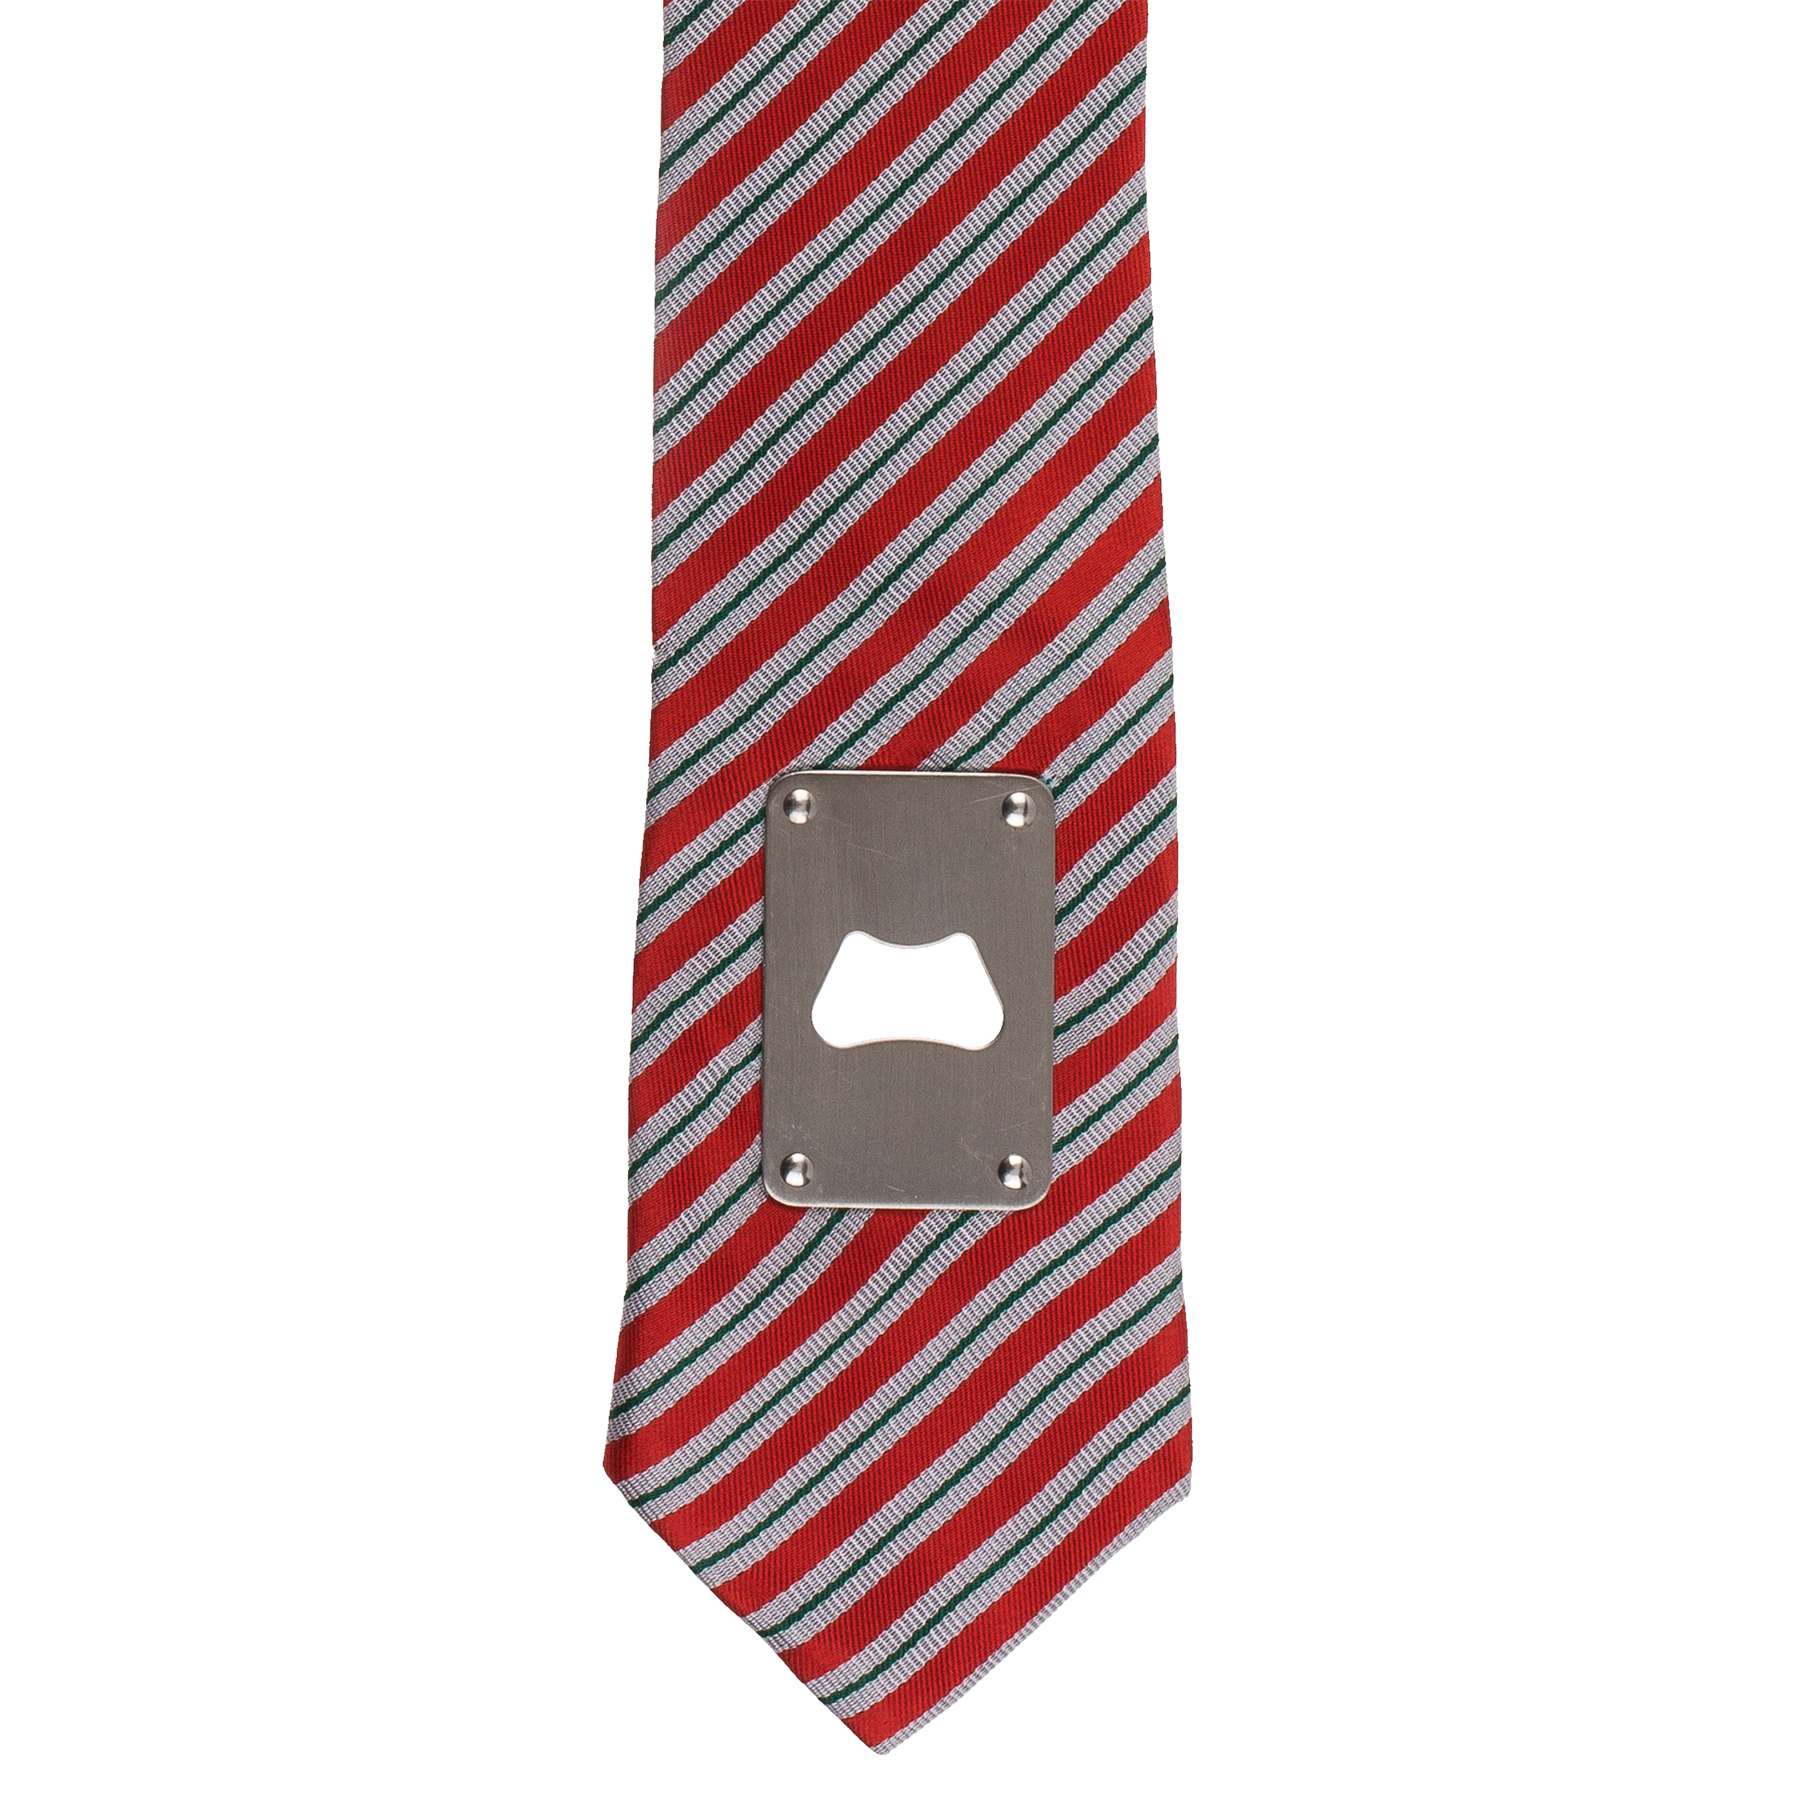 Krawatte mit Flaschenöffner 3768 - 2